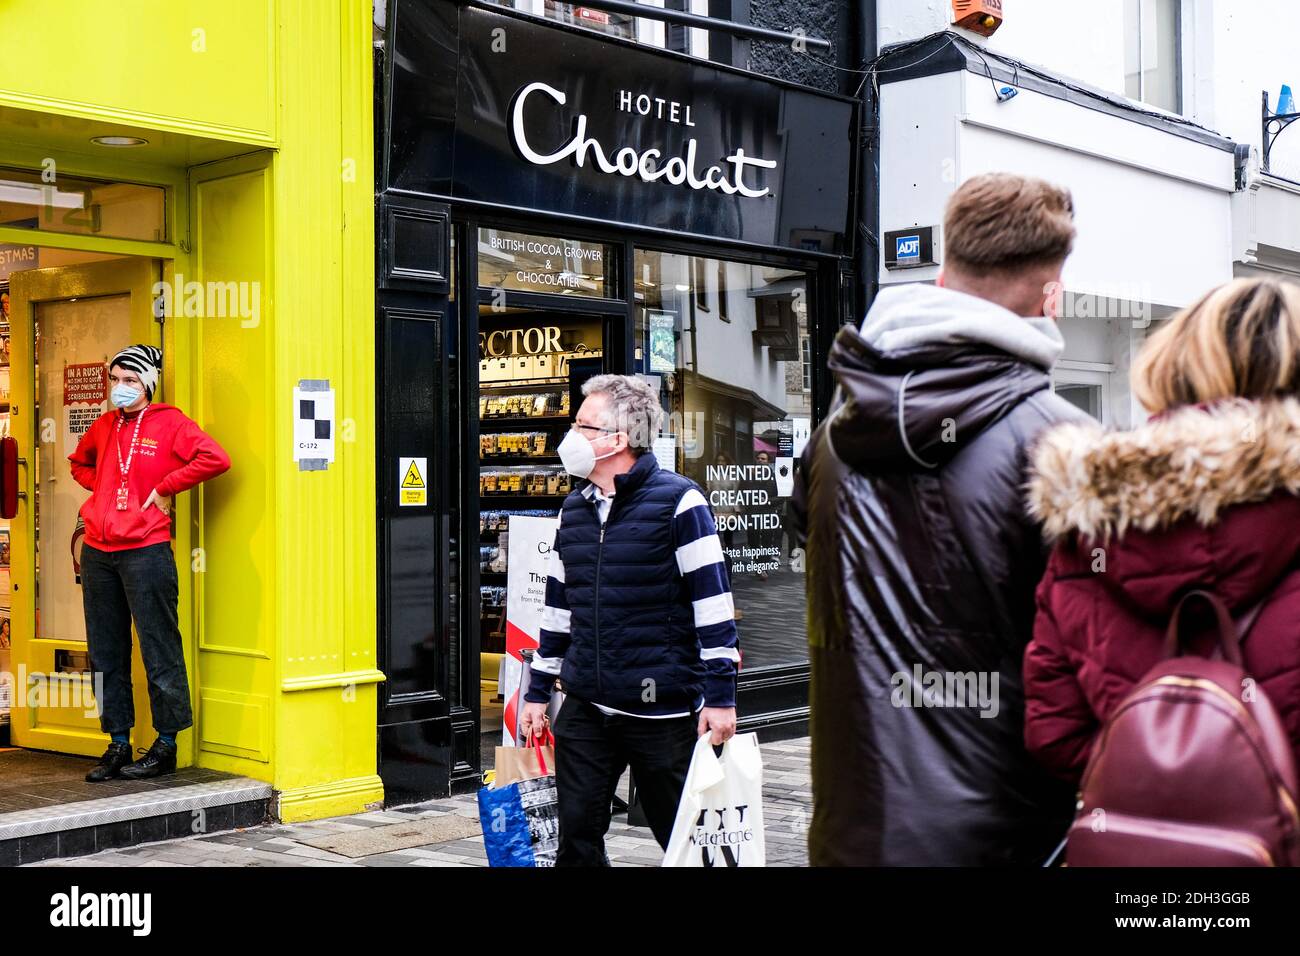 Kingston London, dicembre 09 2020, persone che indossano maschere facciali di protezione Passeggiate oltre l'Hotel Chocolat Confectionery Shop Foto Stock